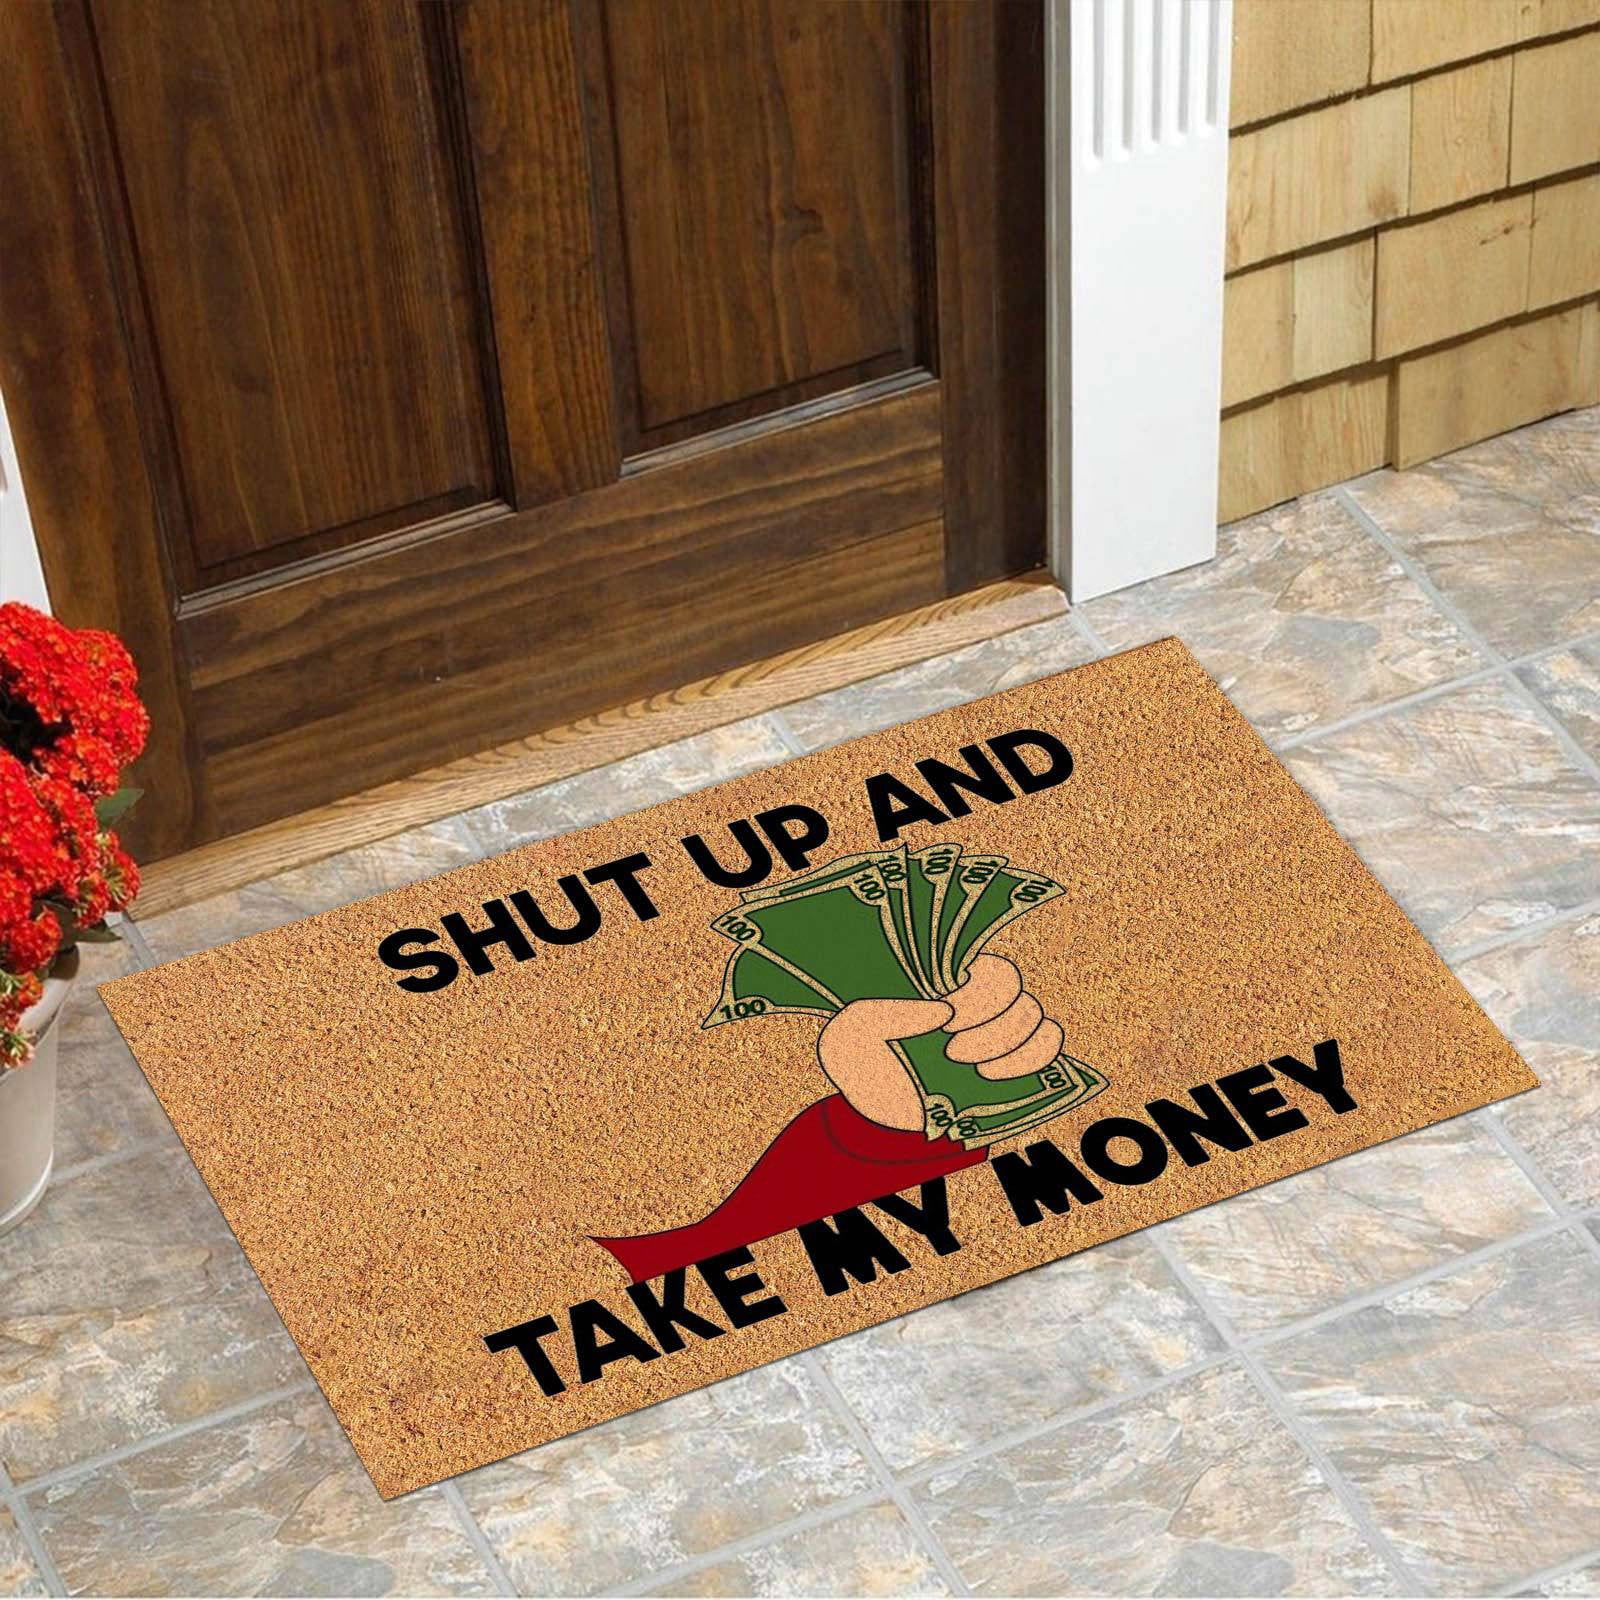 No Se Aceptan Visitas Sin Chisme Doormat Welcome Mat Funny Doormat Indoor  outdoor Floor Mats for